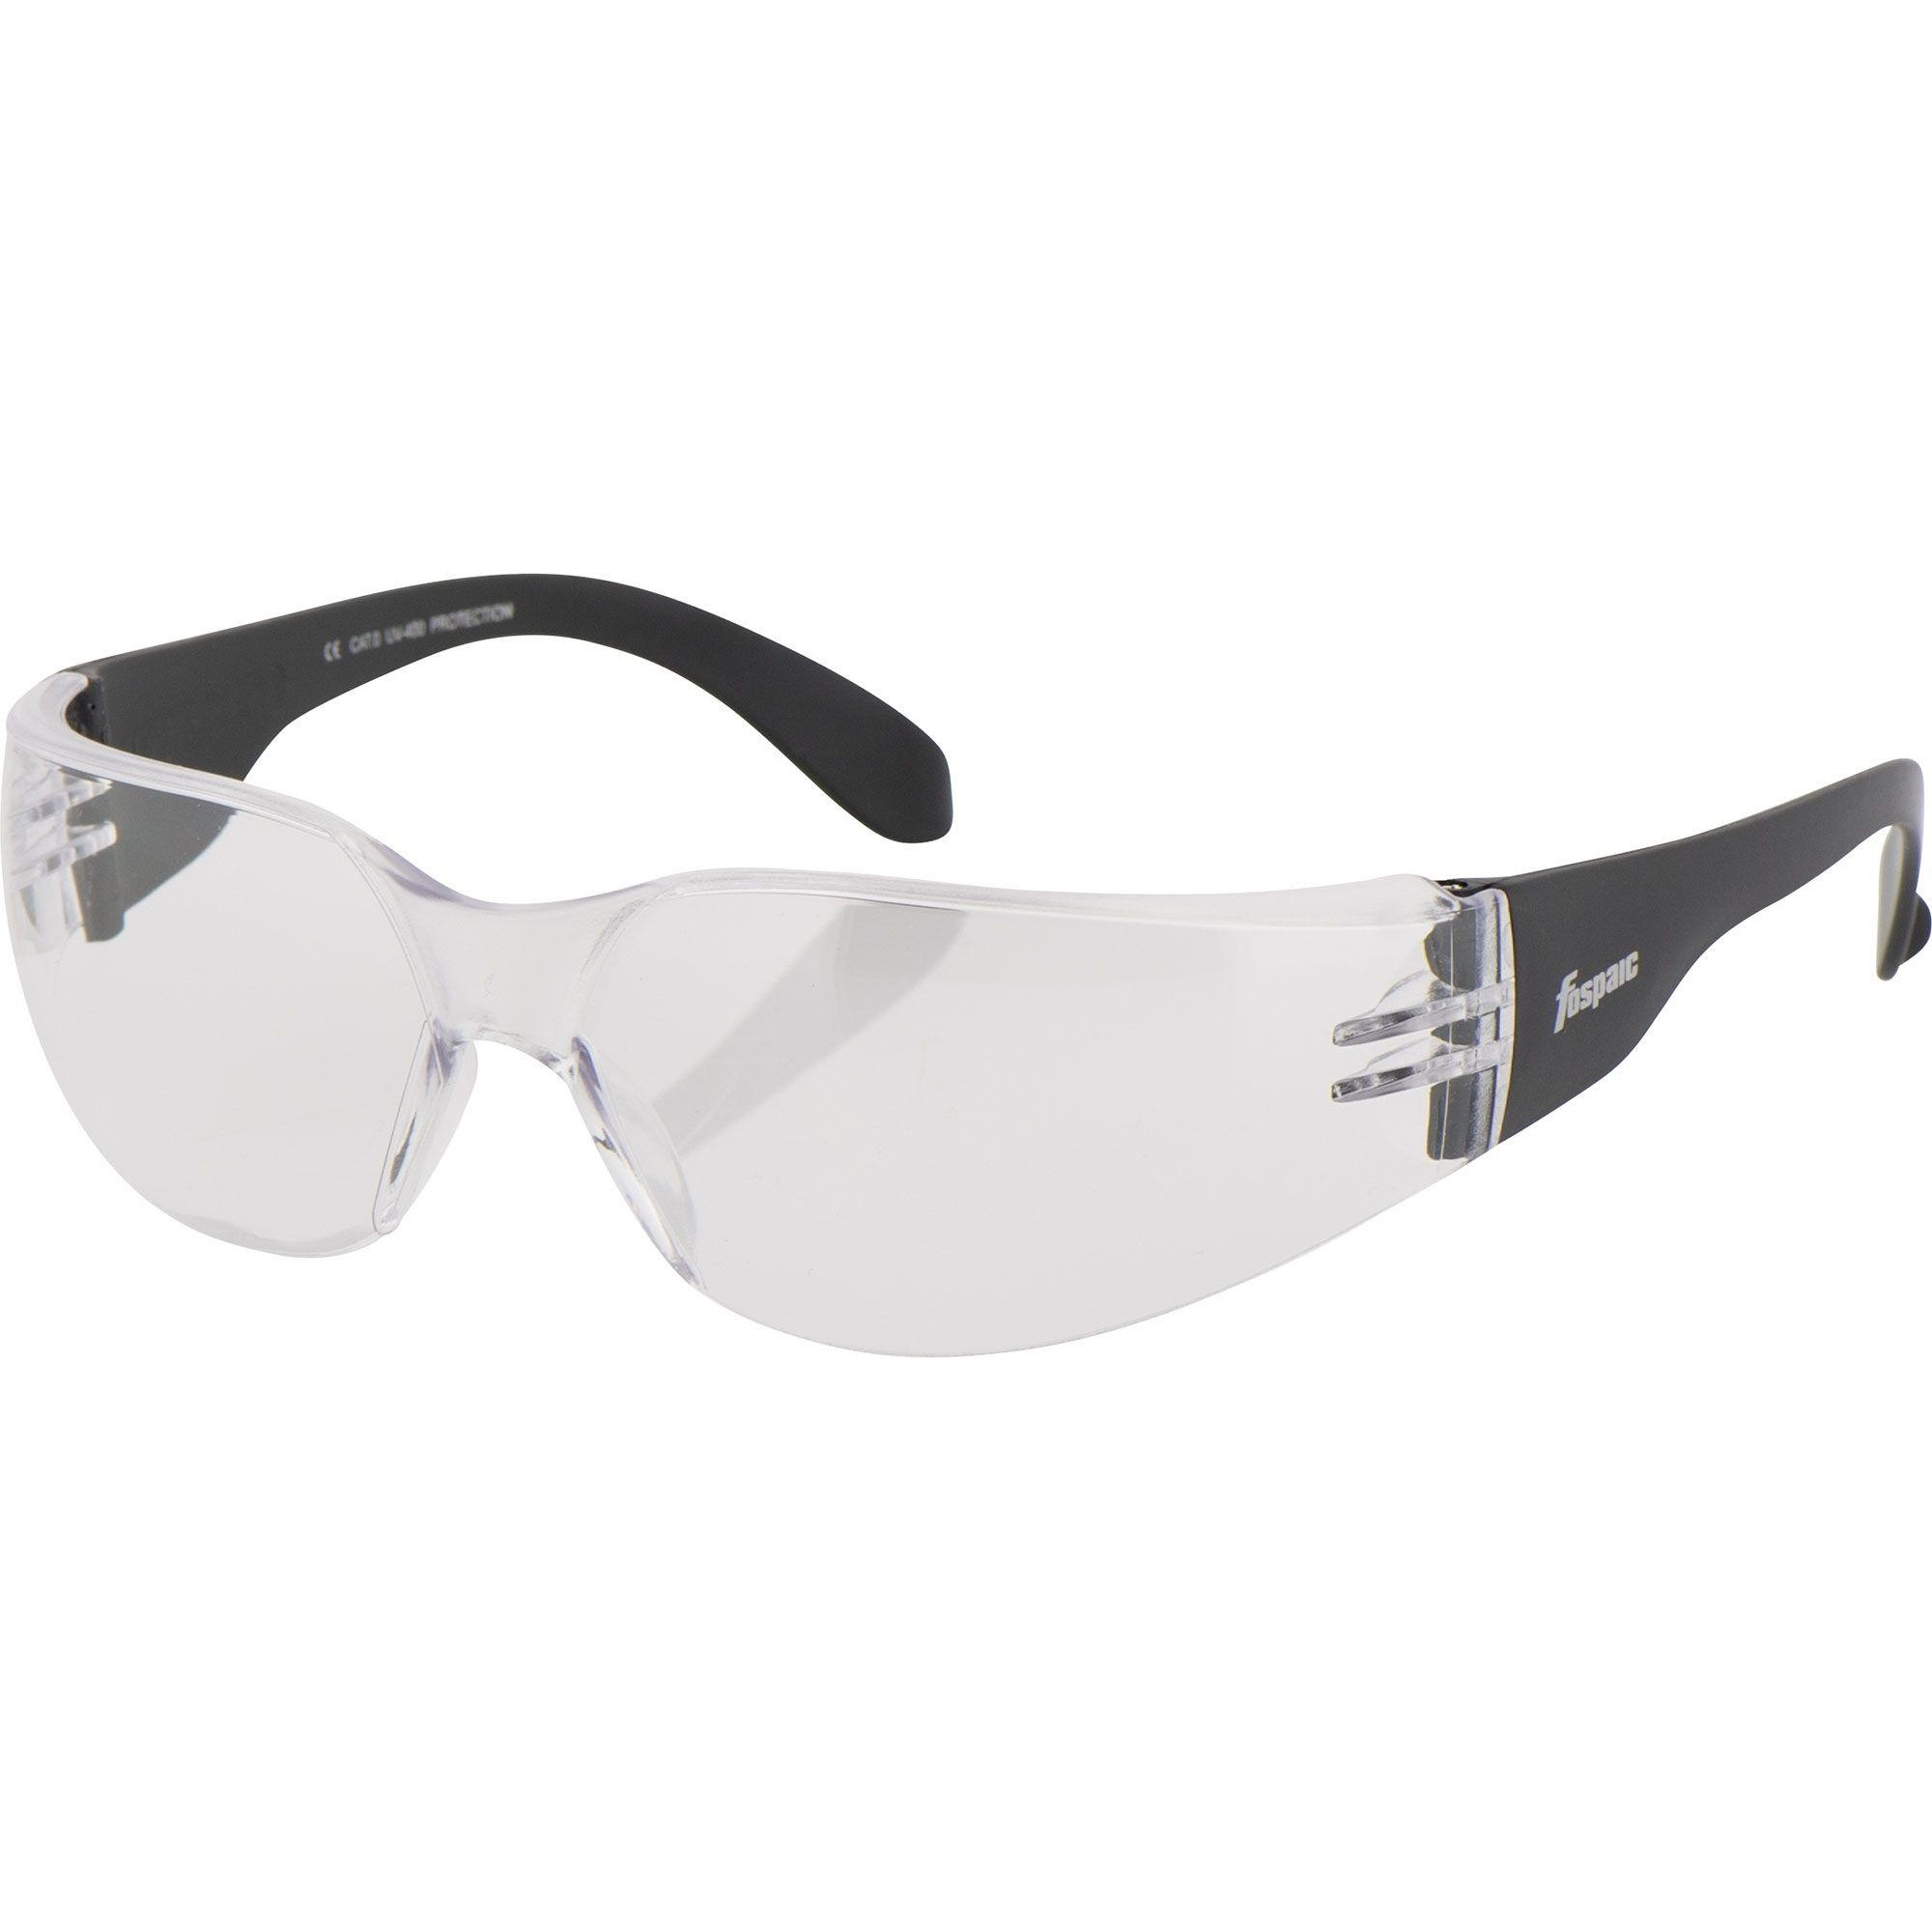 Okulary przeciwsłoneczne FOSPAIC TREND-LINE MODEL 27 slim dla motocyklisty